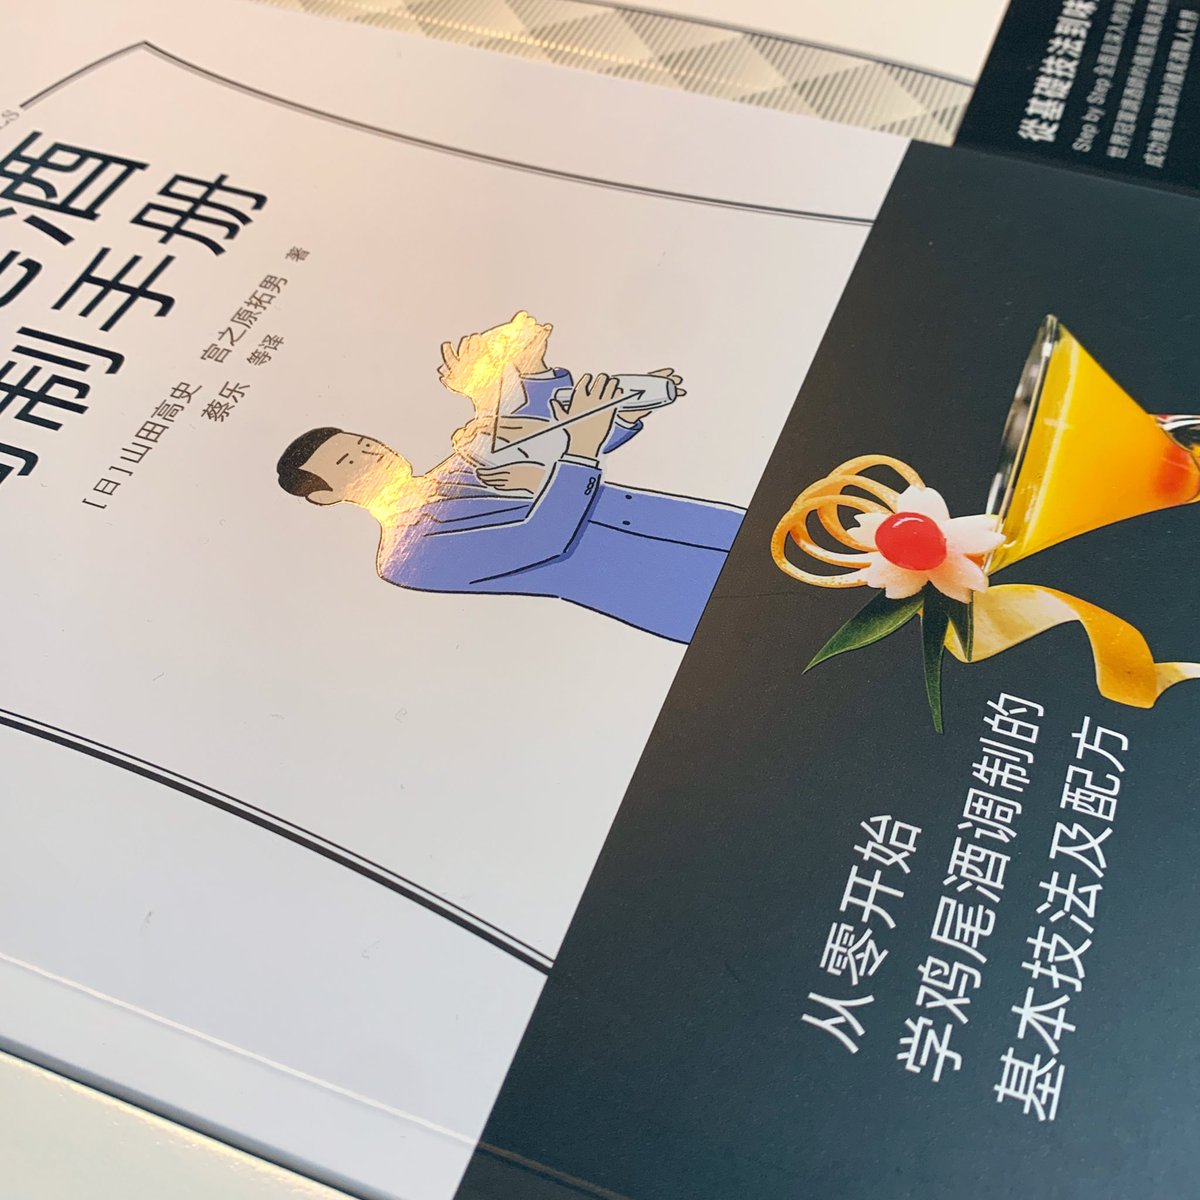 『カクテルの教科書』台湾版に続き、中国版(画像中央)のお見本をいただきました。デザイン、製本仕様、紙や印刷が三書三様で面白いです。 https://t.co/8l53CQK7Qj 